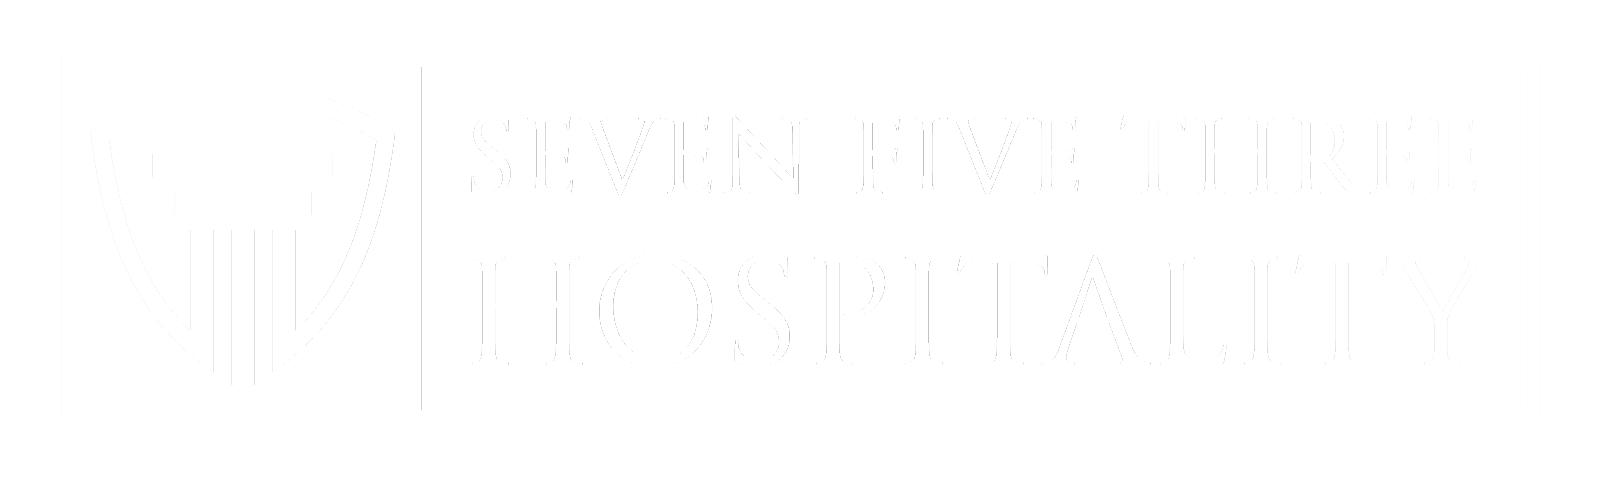 753 Hospitality | Main Logo